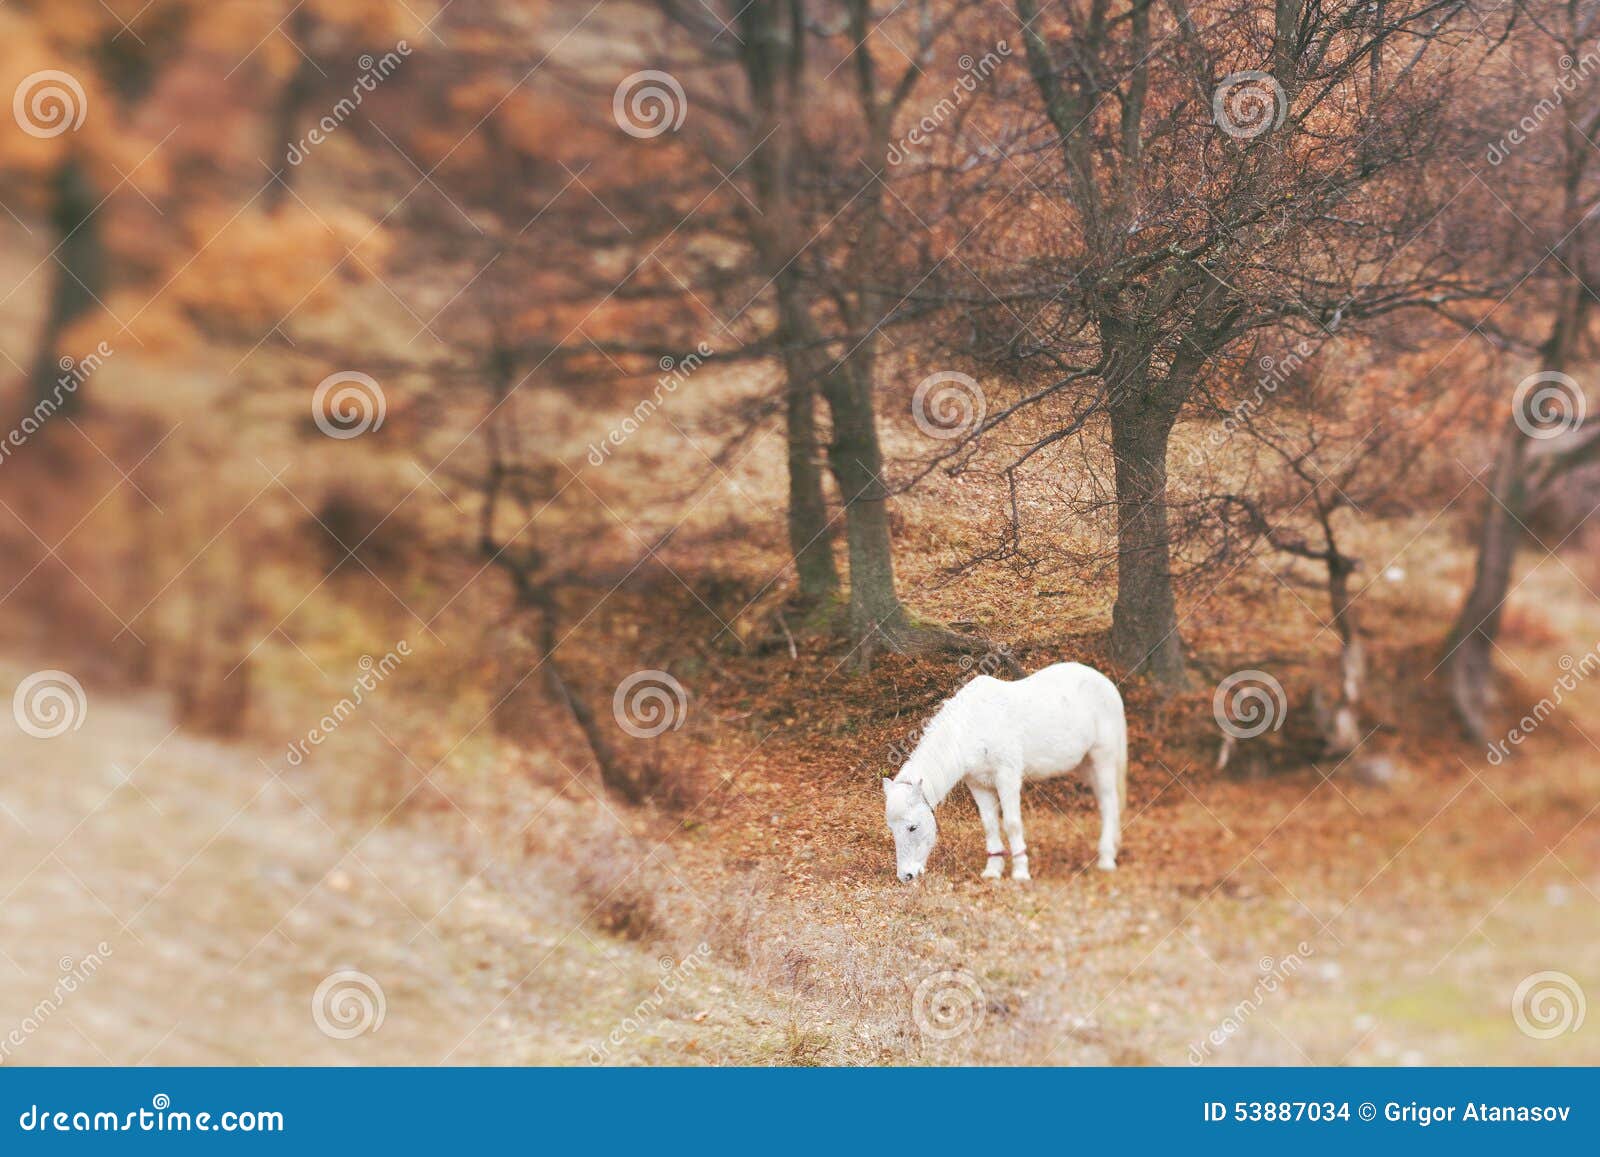 white horse grazing paddock